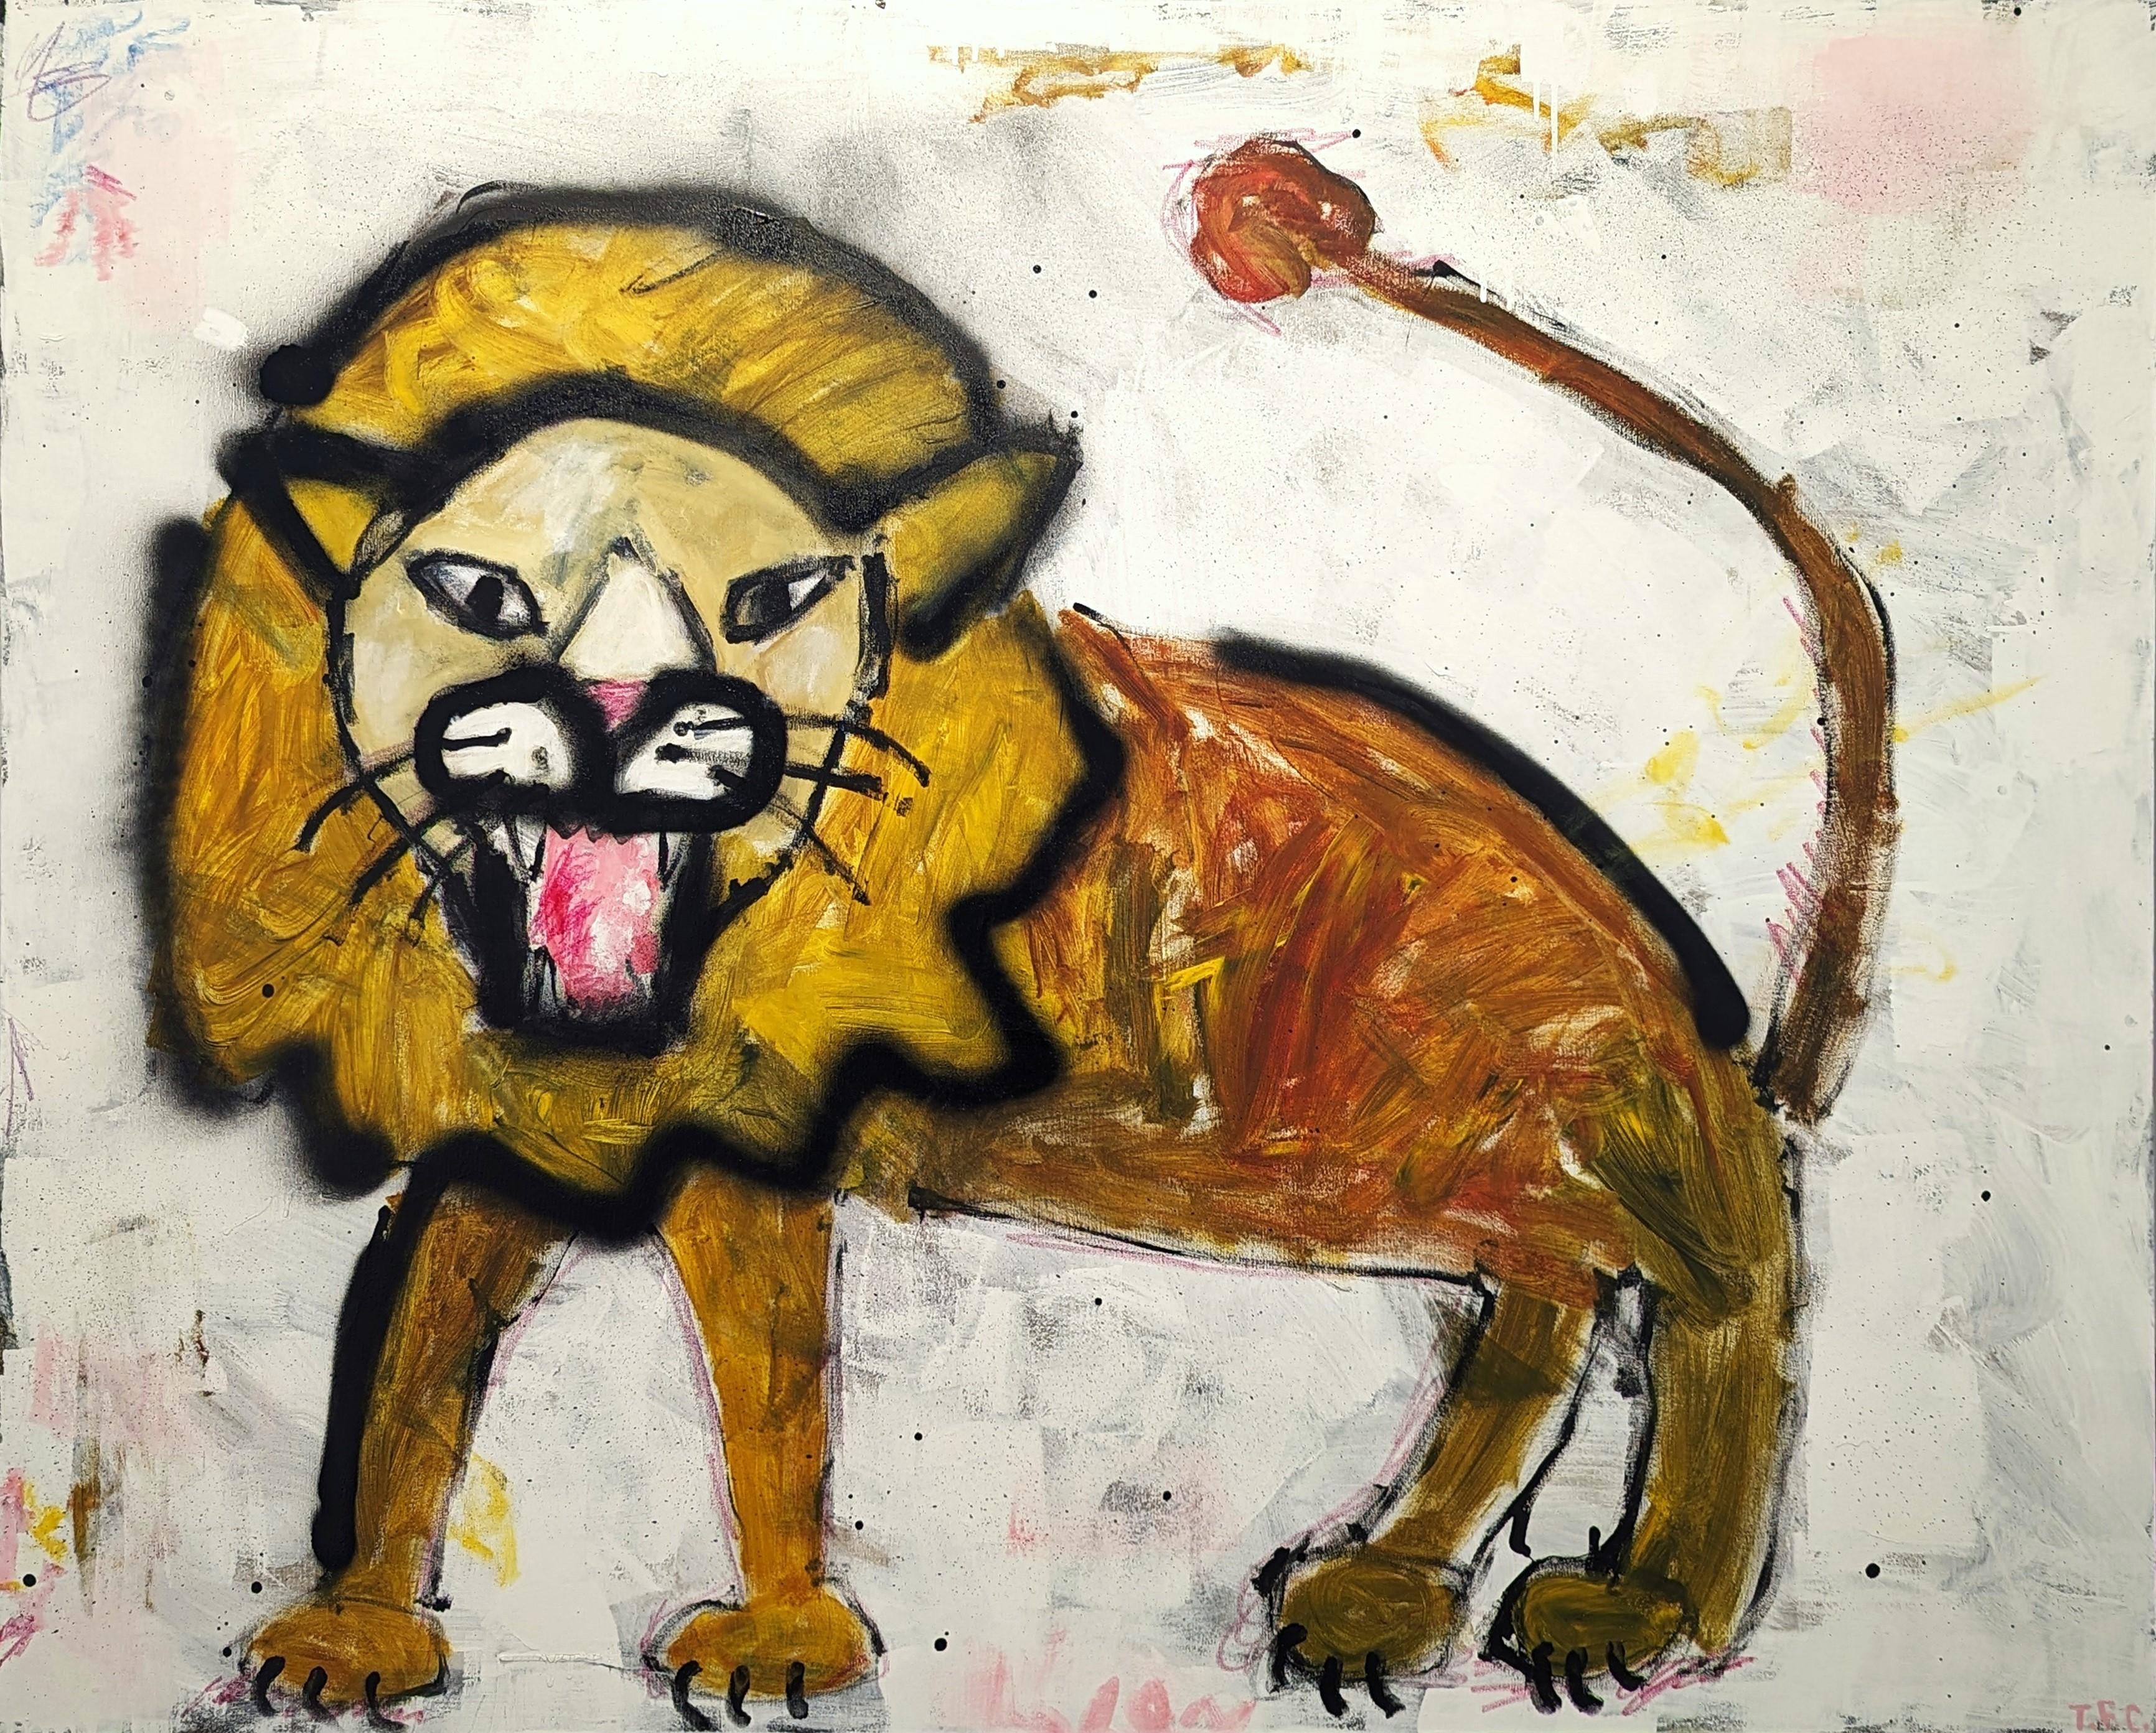 "Lion" Peinture abstraite contemporaine Pop Art animalier en tons jaunes et noirs